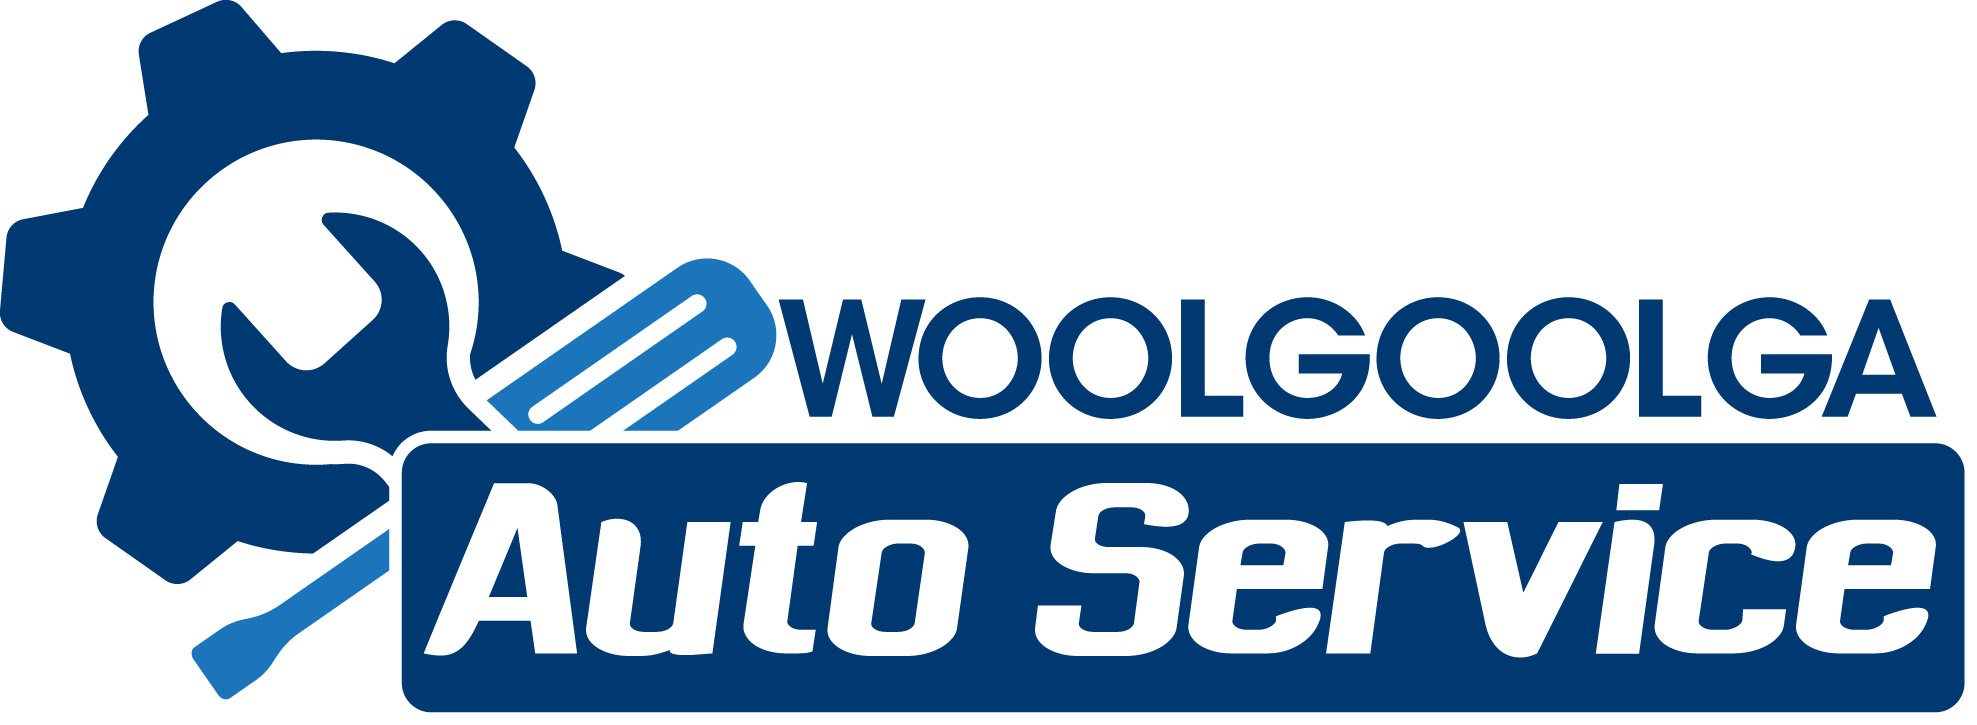 Woolgoolga Auto Service